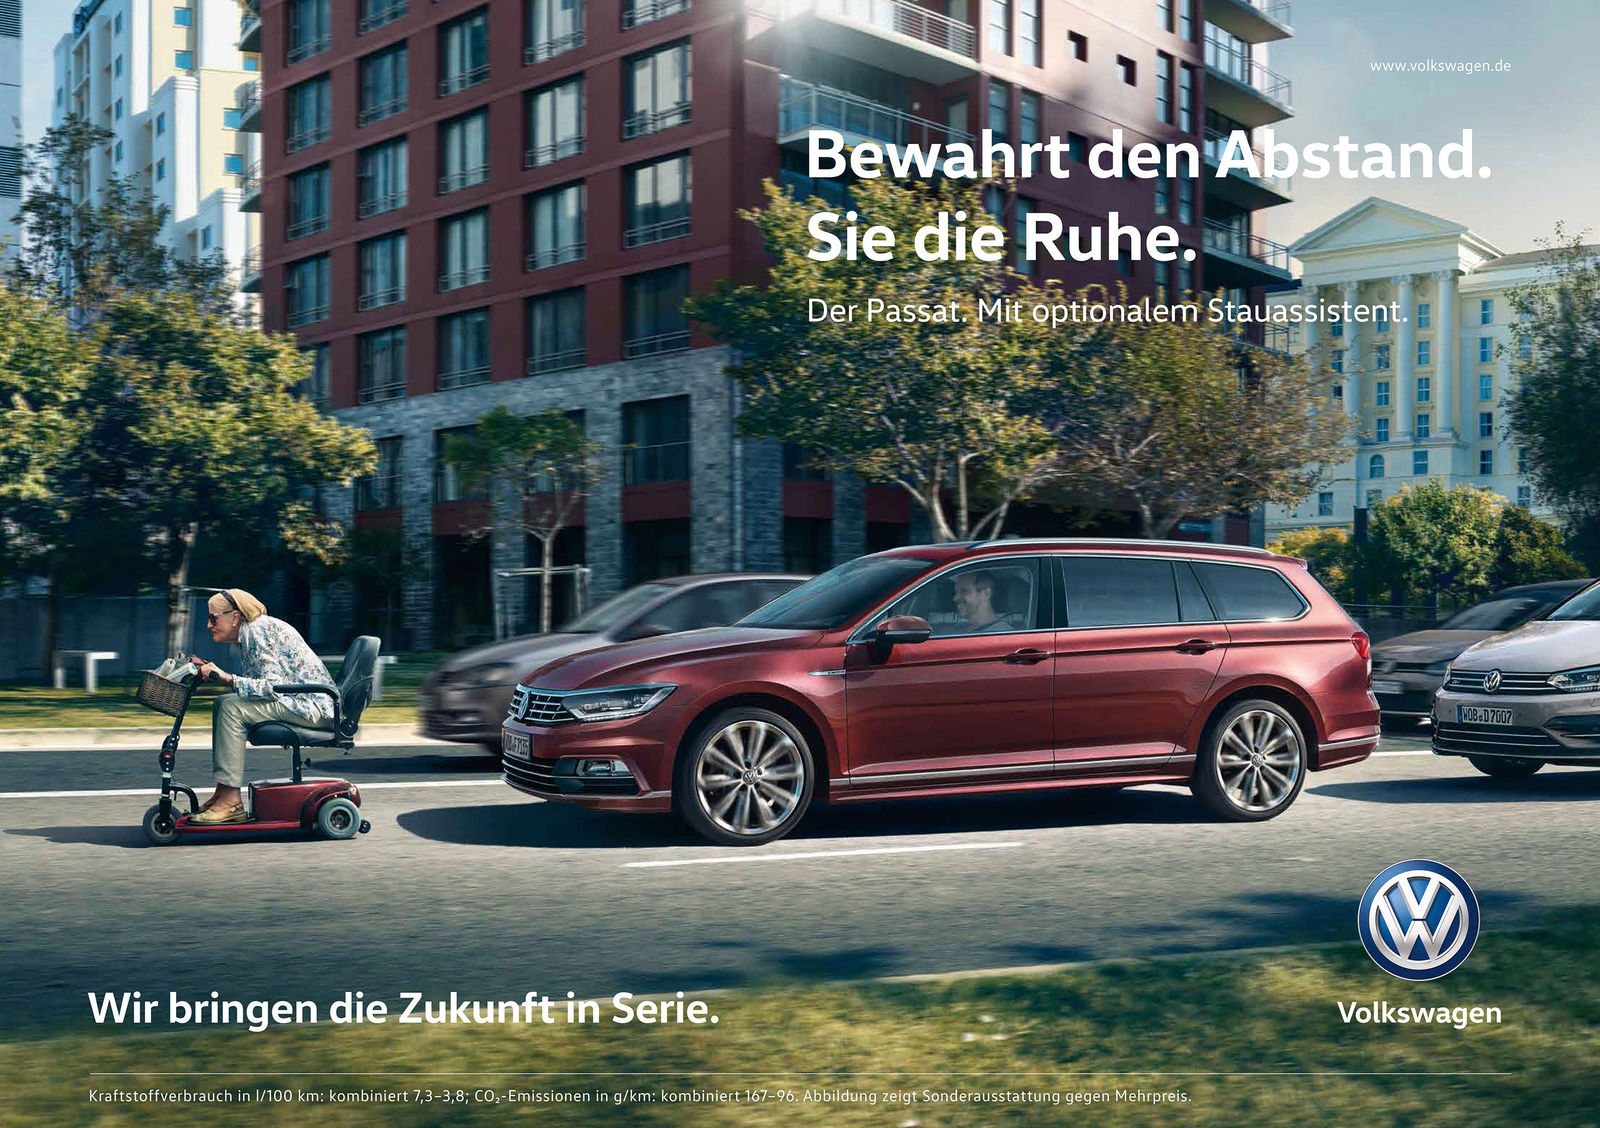 Volkswagen schaltet Werbung gezielt im Stau